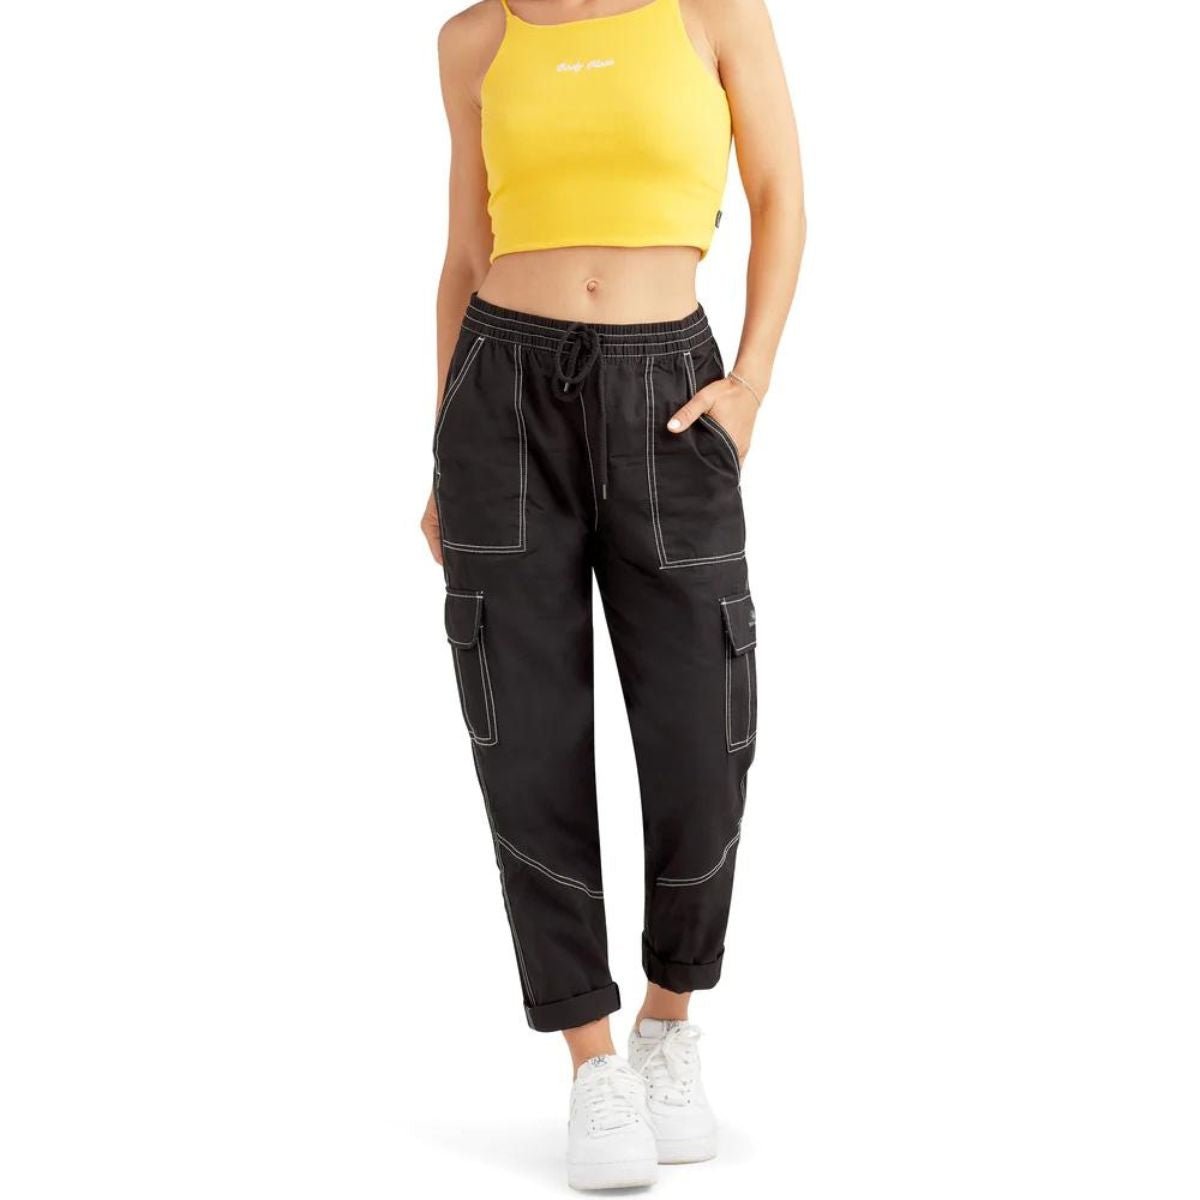 http://www.boardco.com/cdn/shop/products/body-glove-sportswear-womens-cargo-pant-in-black-248767.jpg?v=1682129960